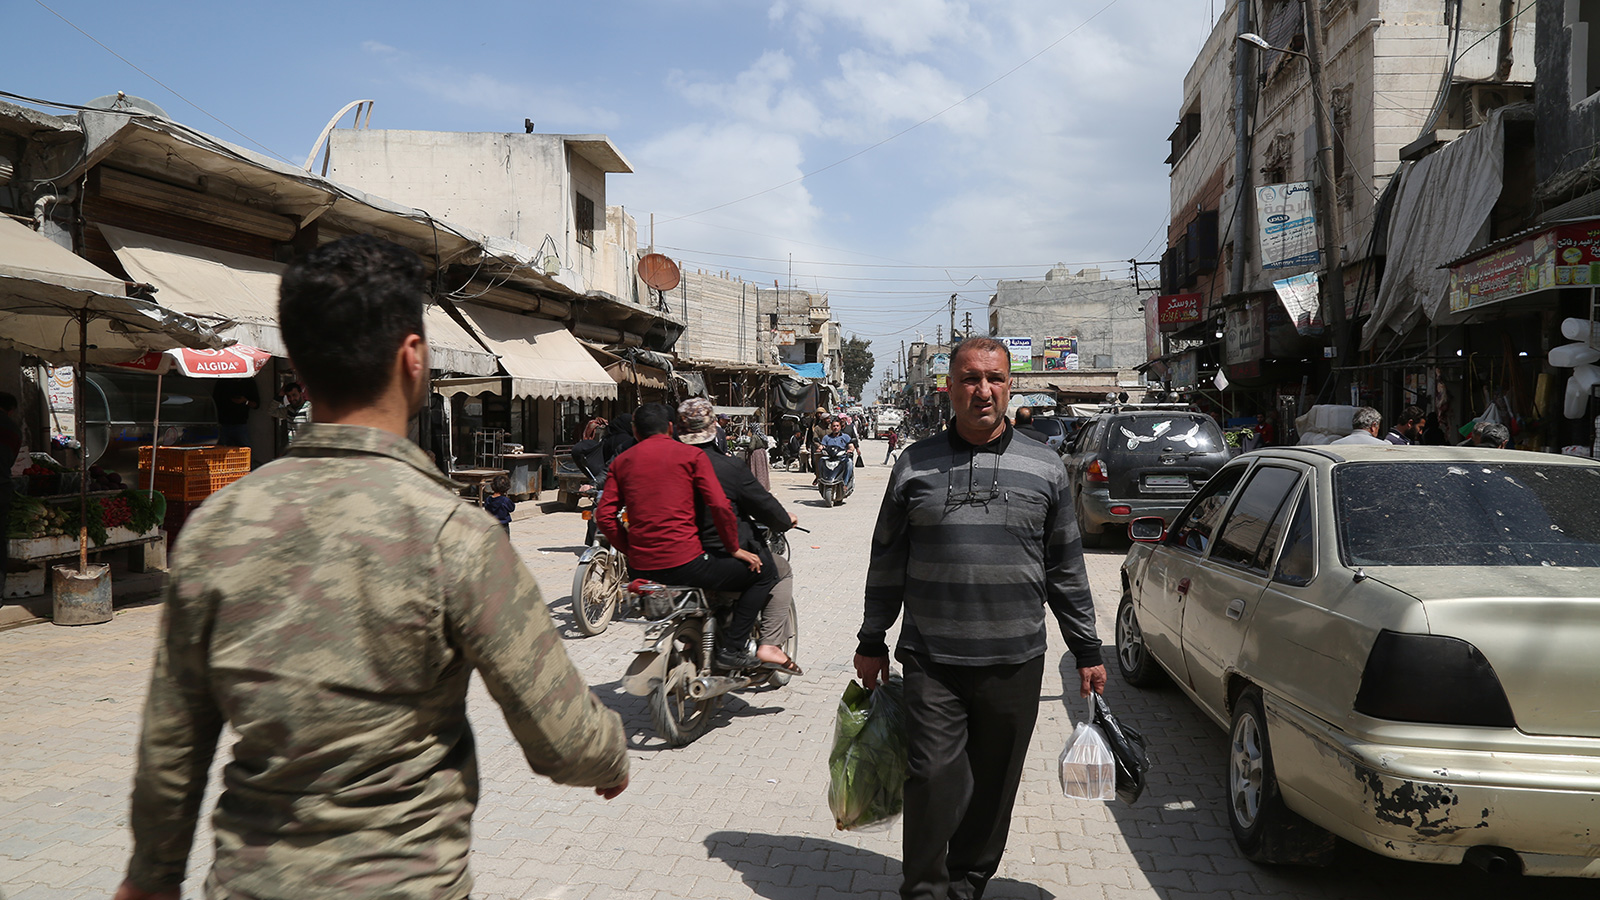 ‪الاقتصاد السوري يشهد انهيارا كبيرا جراء الحرب المستعرة في البلاد منذ تسع سنوات‬ (الجزيرة)